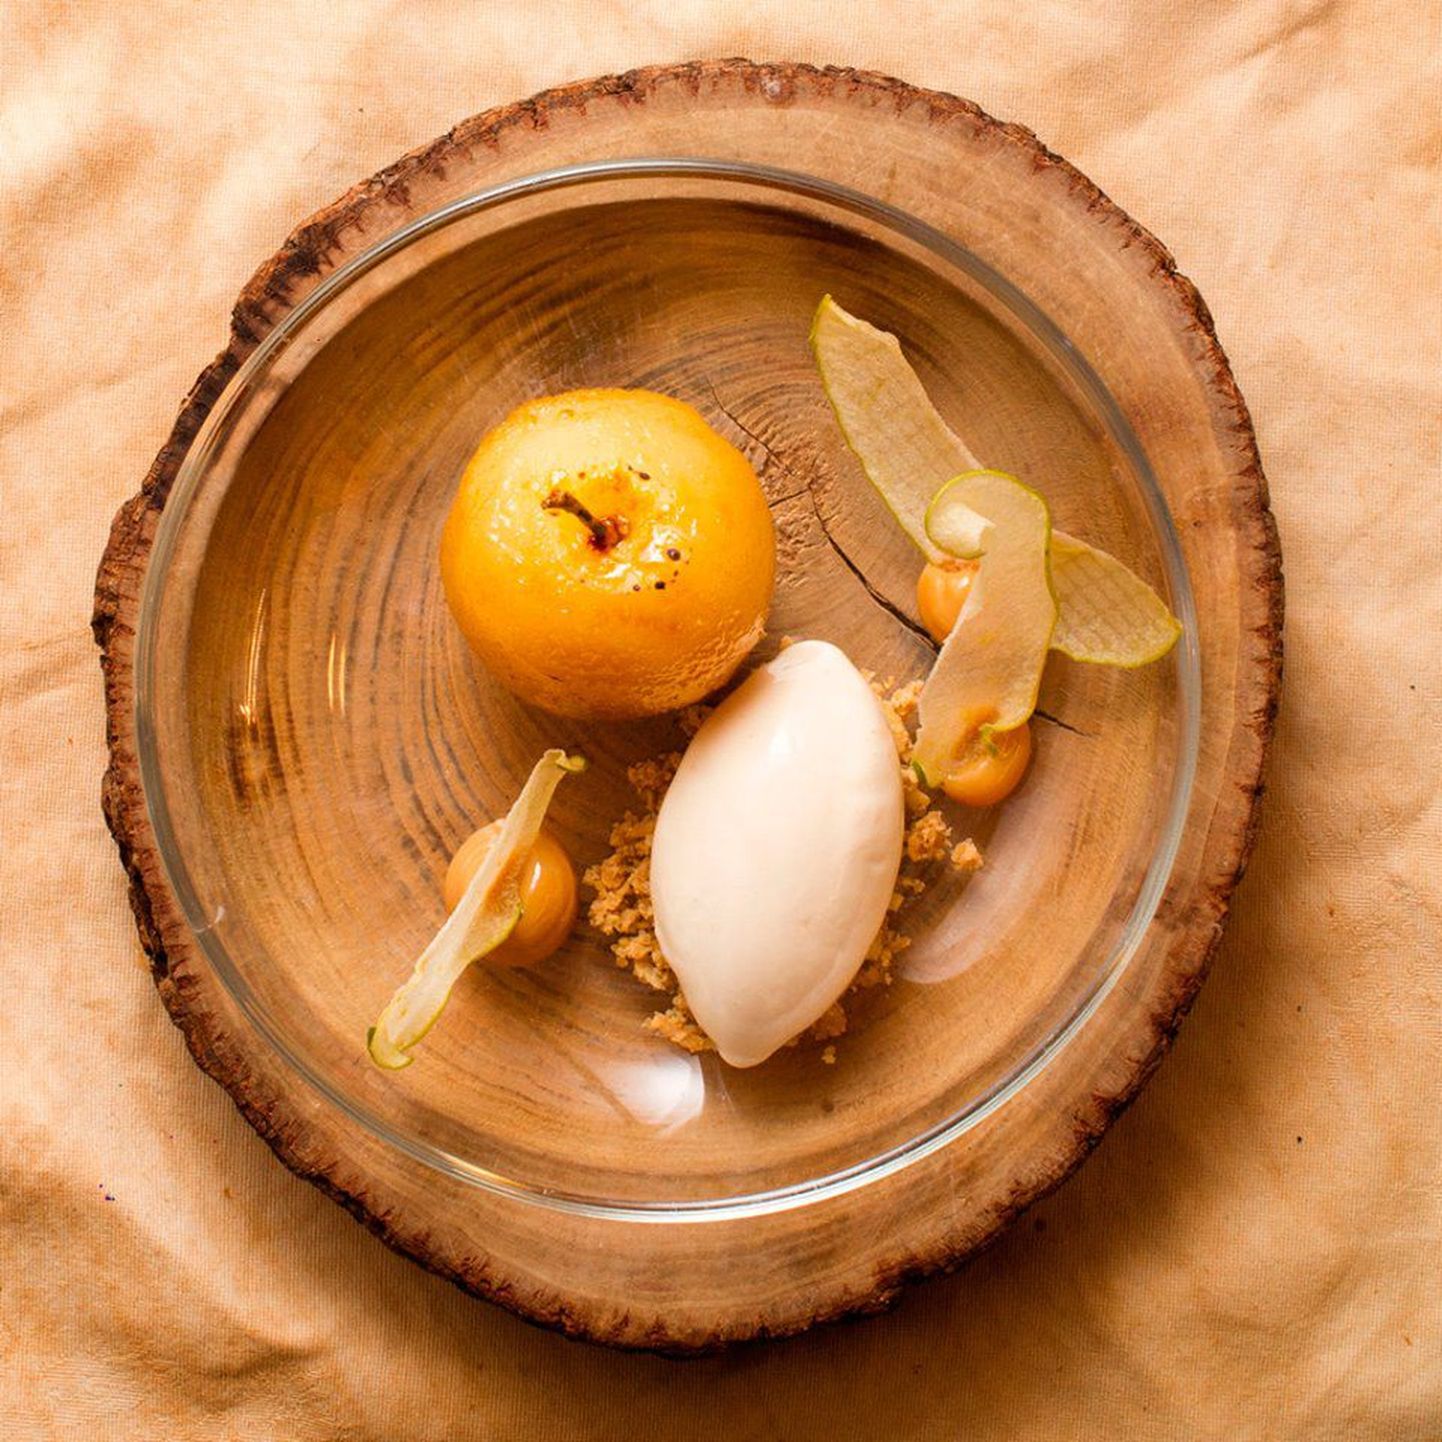 Restorani Neh menüüst: glasuuritud õun
karamelli ja  Alvados´e jäätisega.